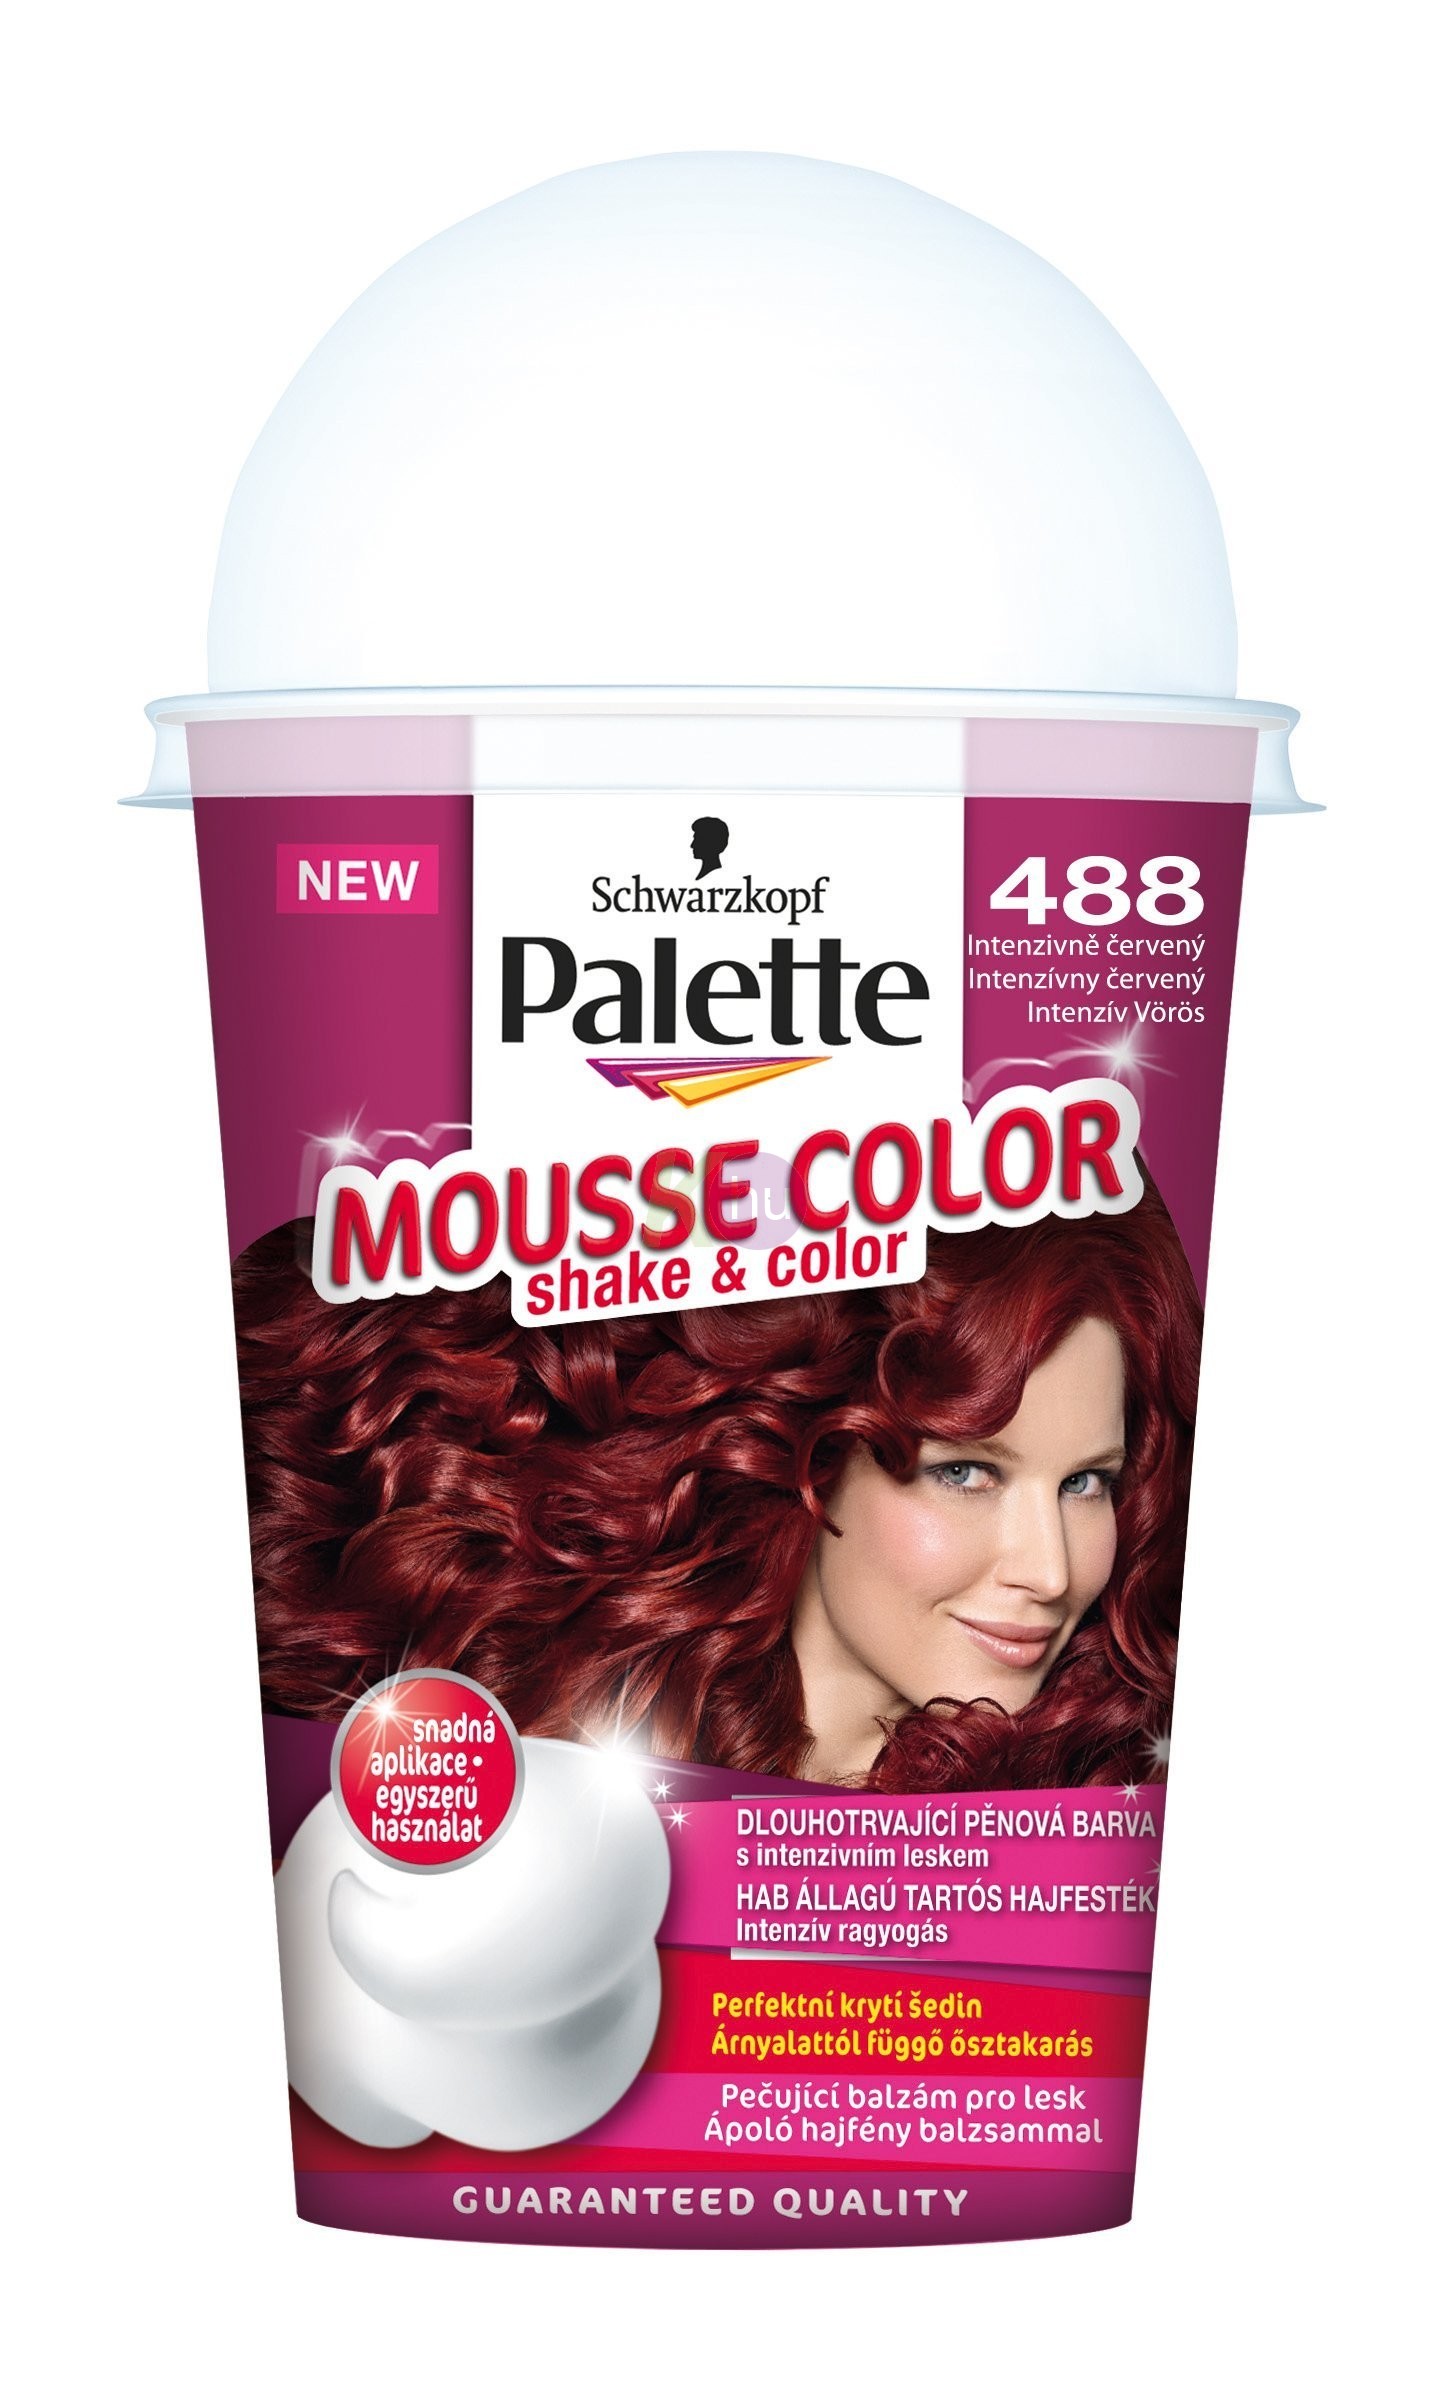 Palette Mousse Color 488 intenzív vörös 13100875